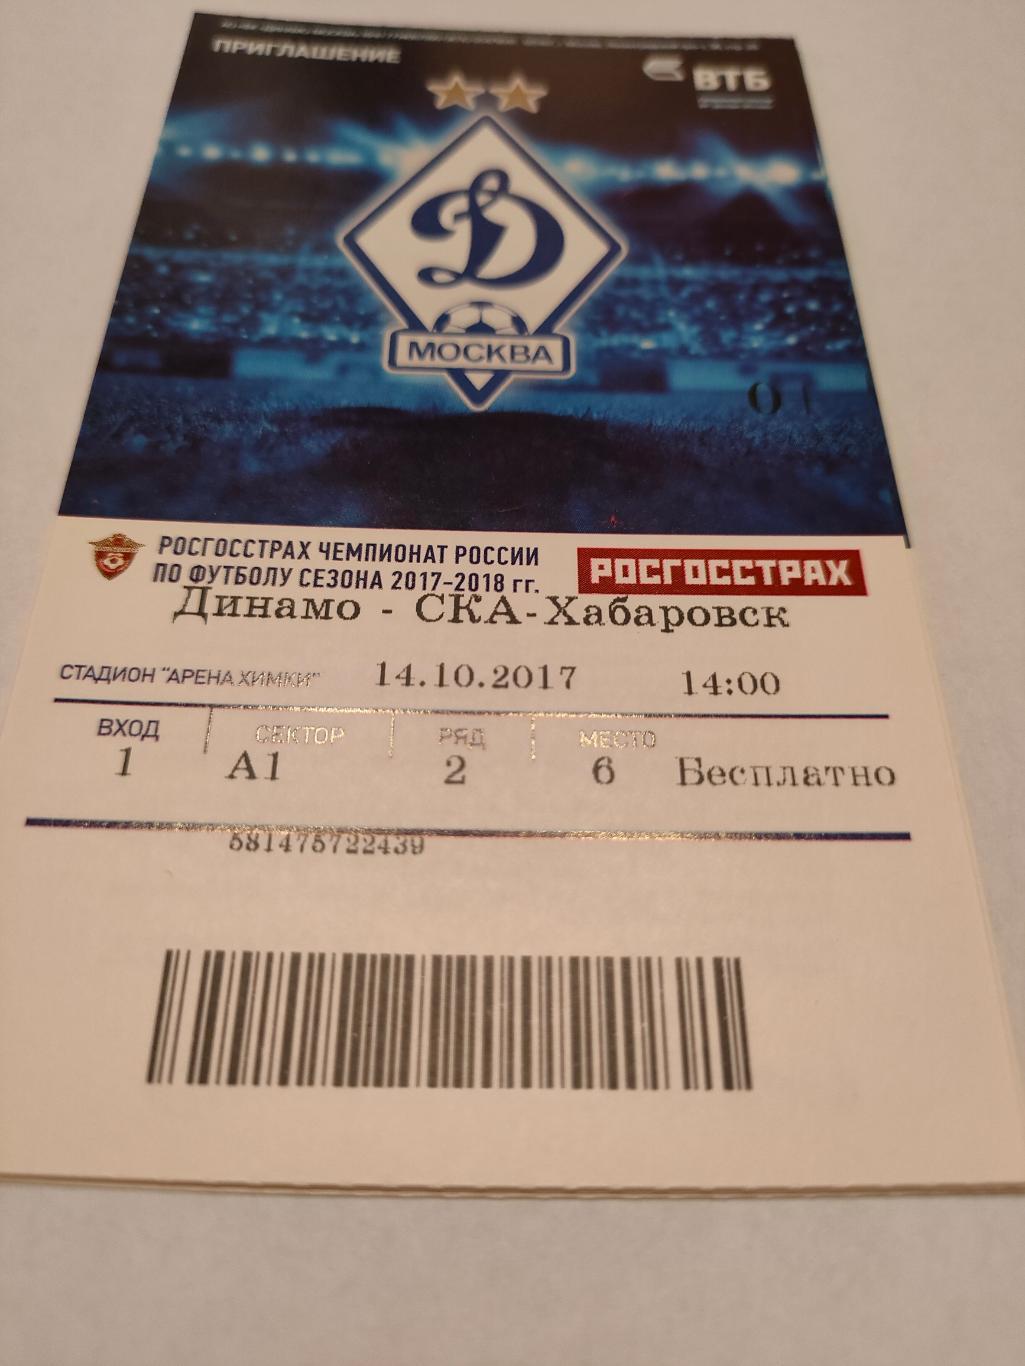 14.10.2017 - Динамо (Москва) - СКА-Хабаровск (Хабаровск)